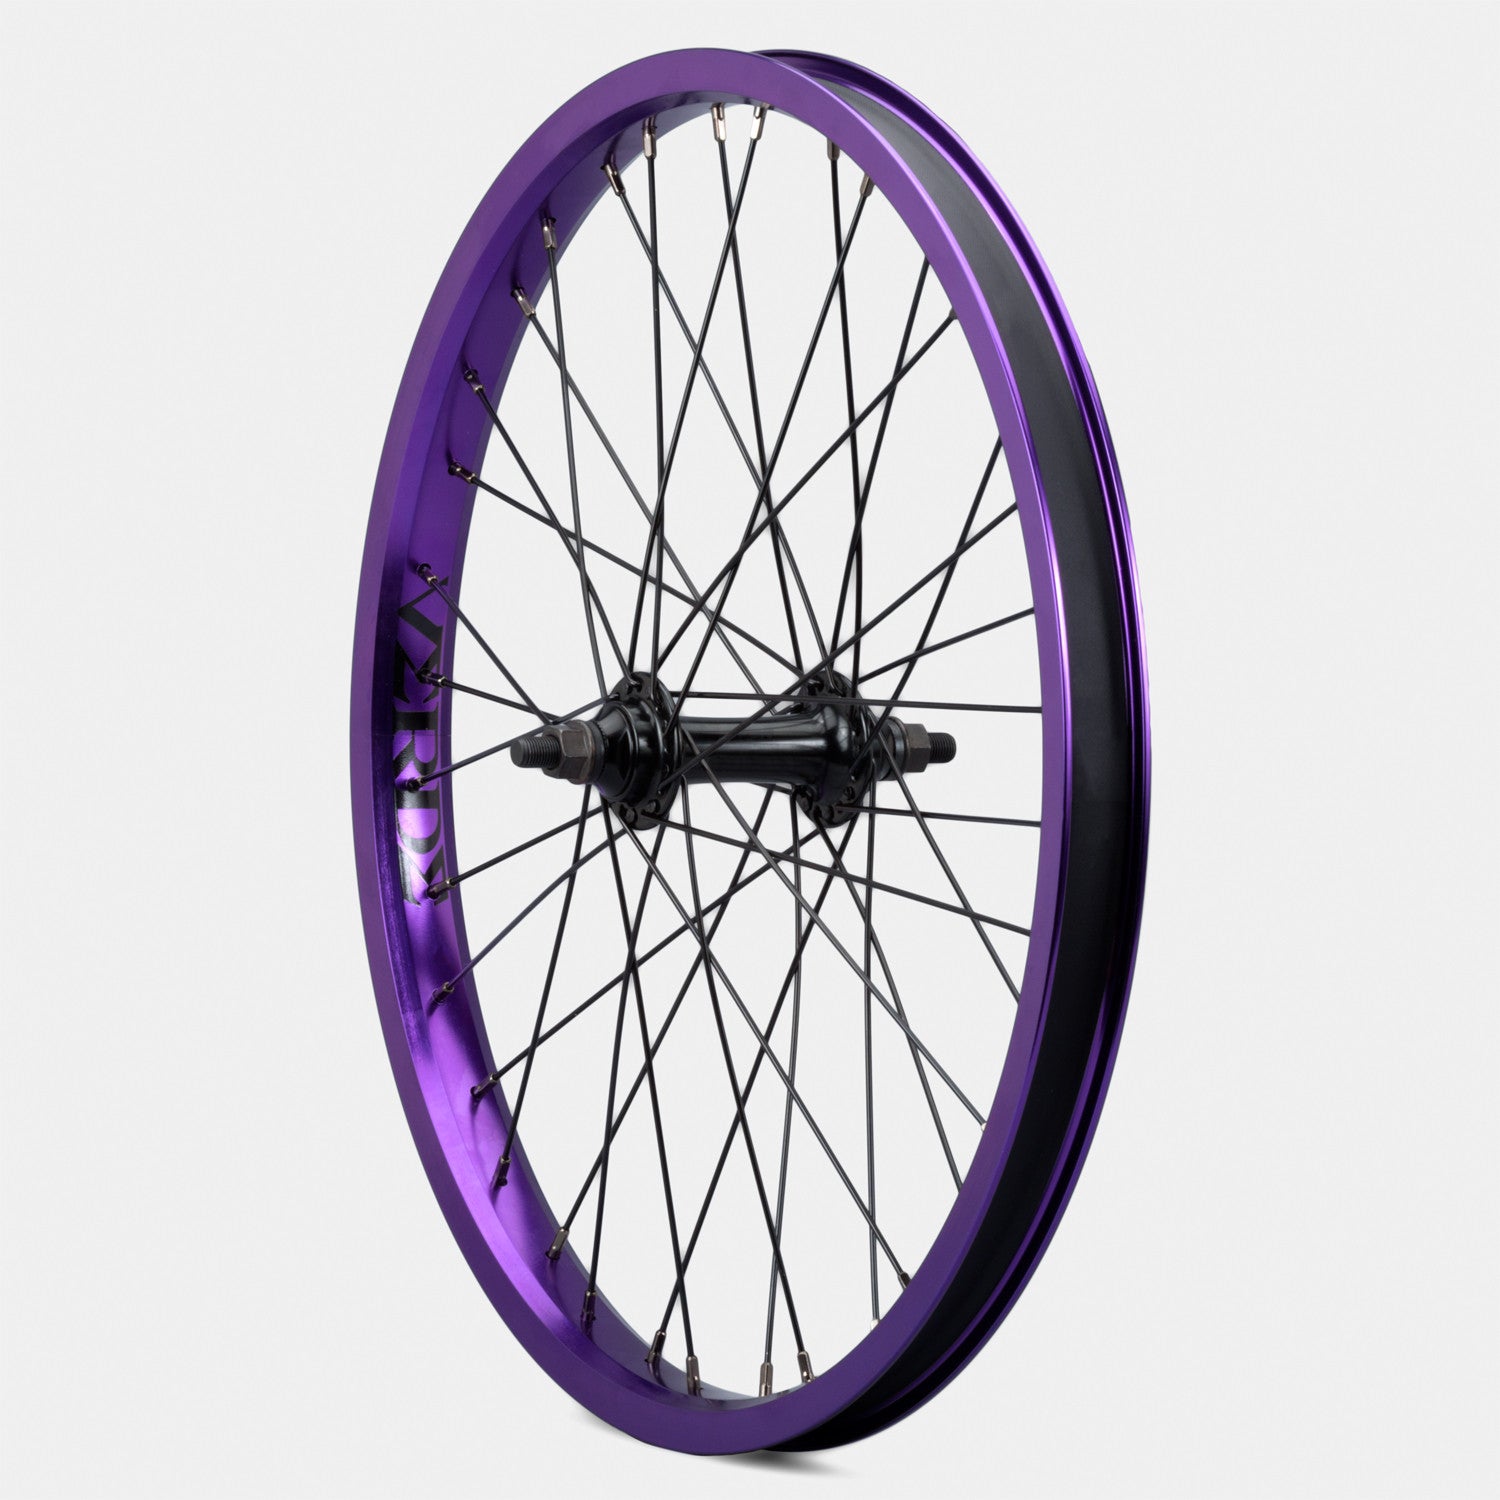 20 inch front bike wheel